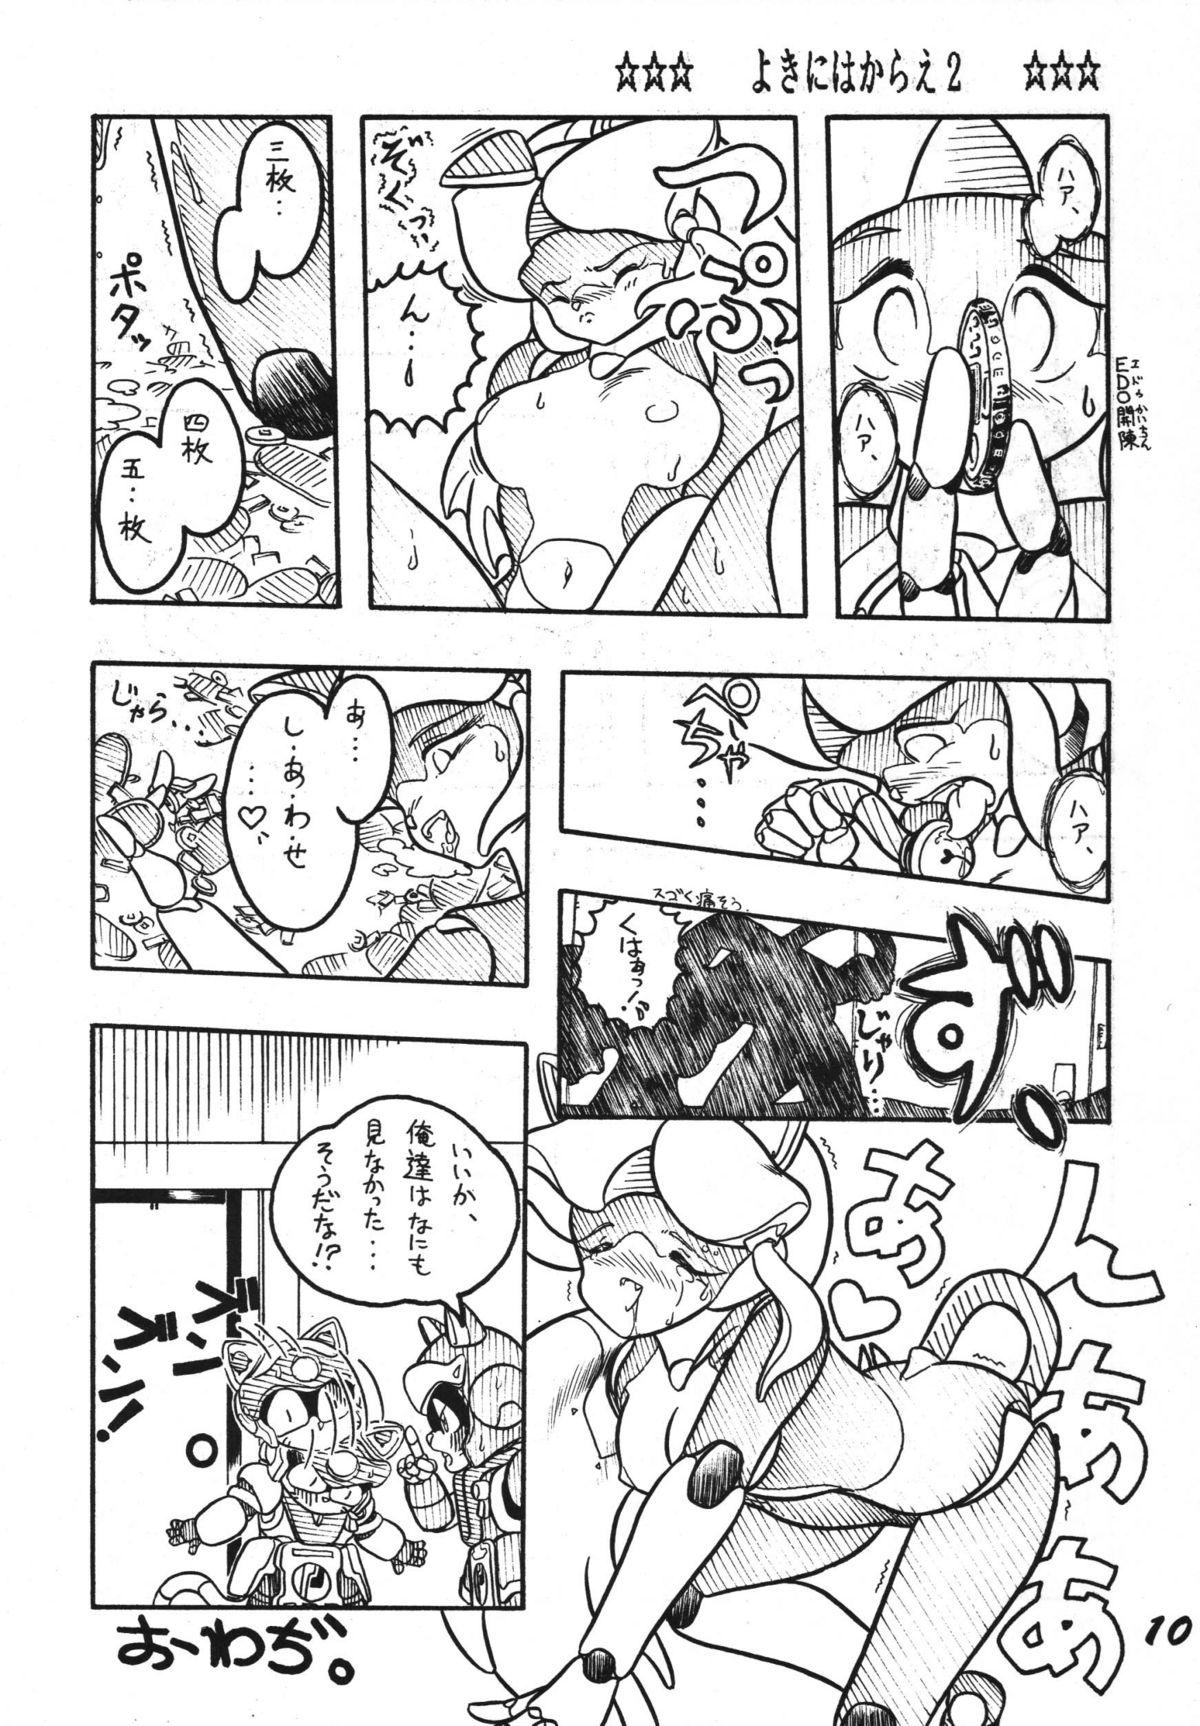 Twerk Yokini Hakarae - Ni no Maki - Samurai pizza cats Anal Sex - Page 10